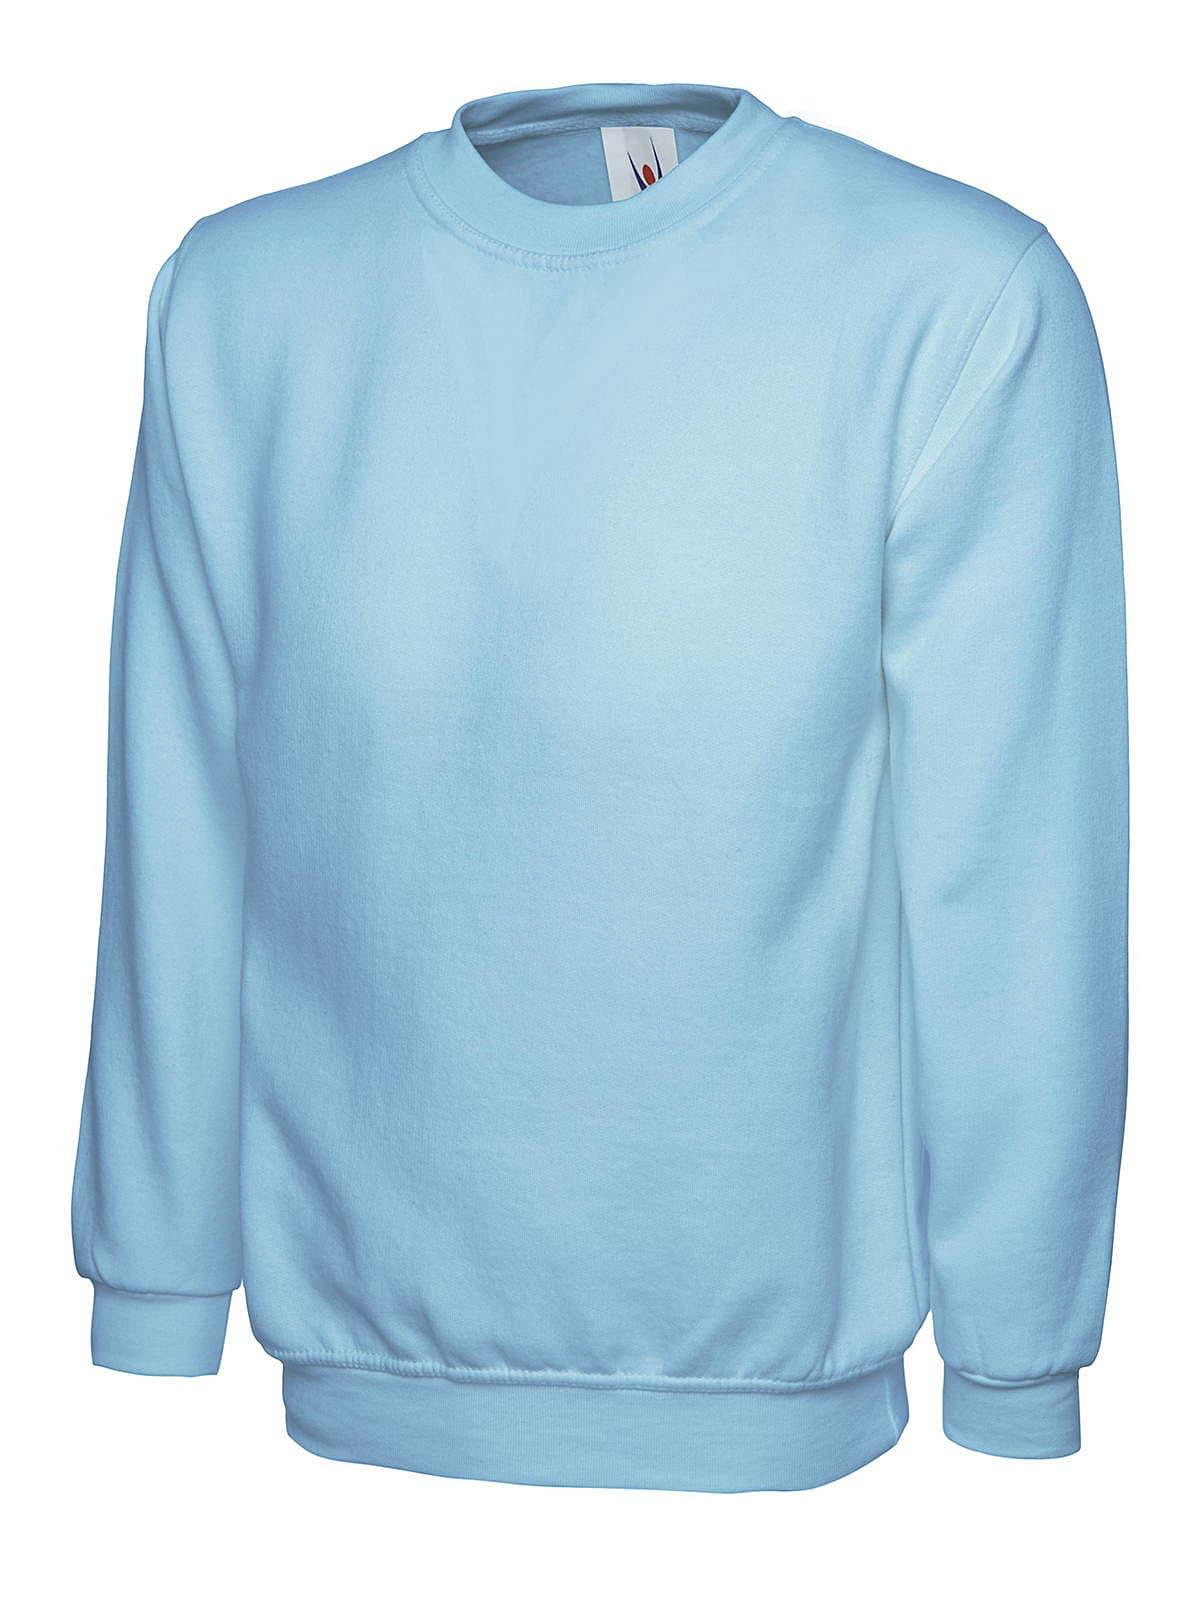 Uneek 300GSM Classic Sweatshirt in Sky (Product Code: UC203)